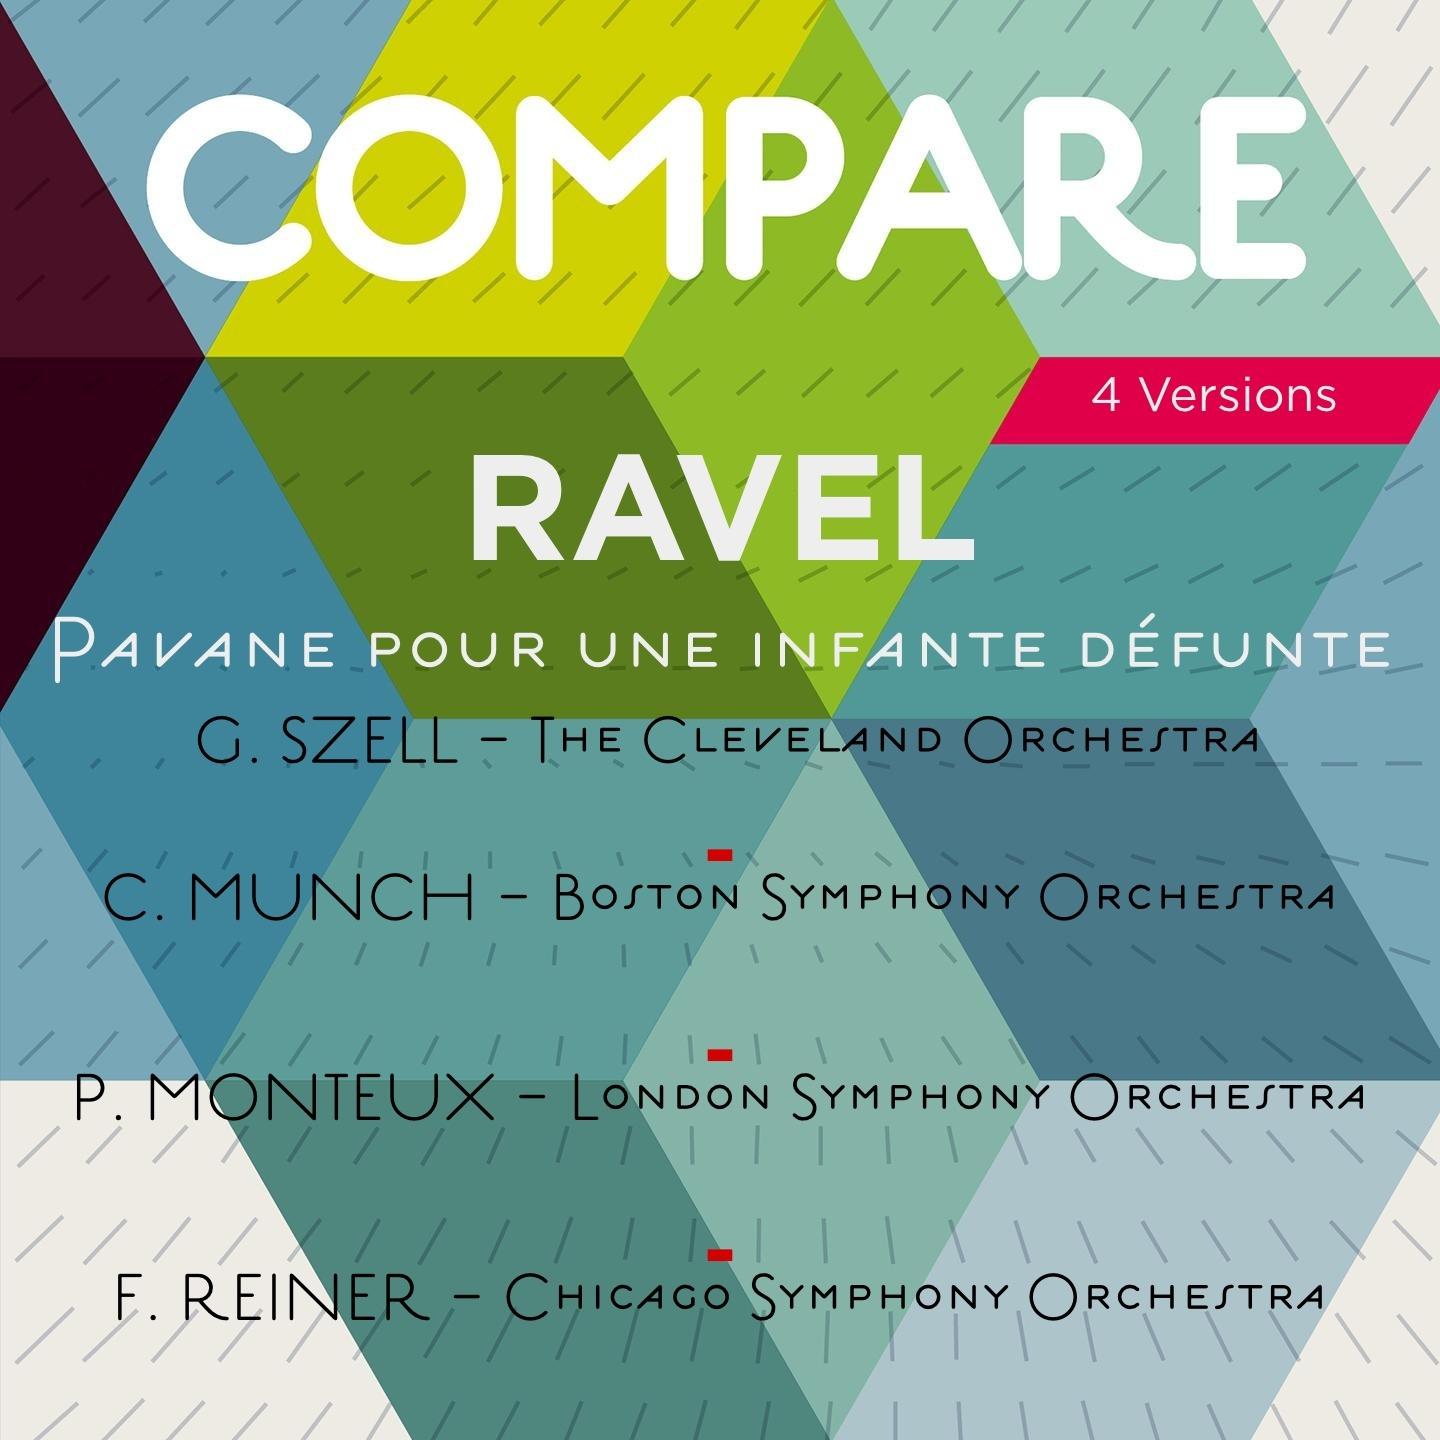 Ravel: Pavane pour une infante de funte, M. 19, George Szell vs. Charles Munch vs. Pierre Monteux vs. Fritz Reiner